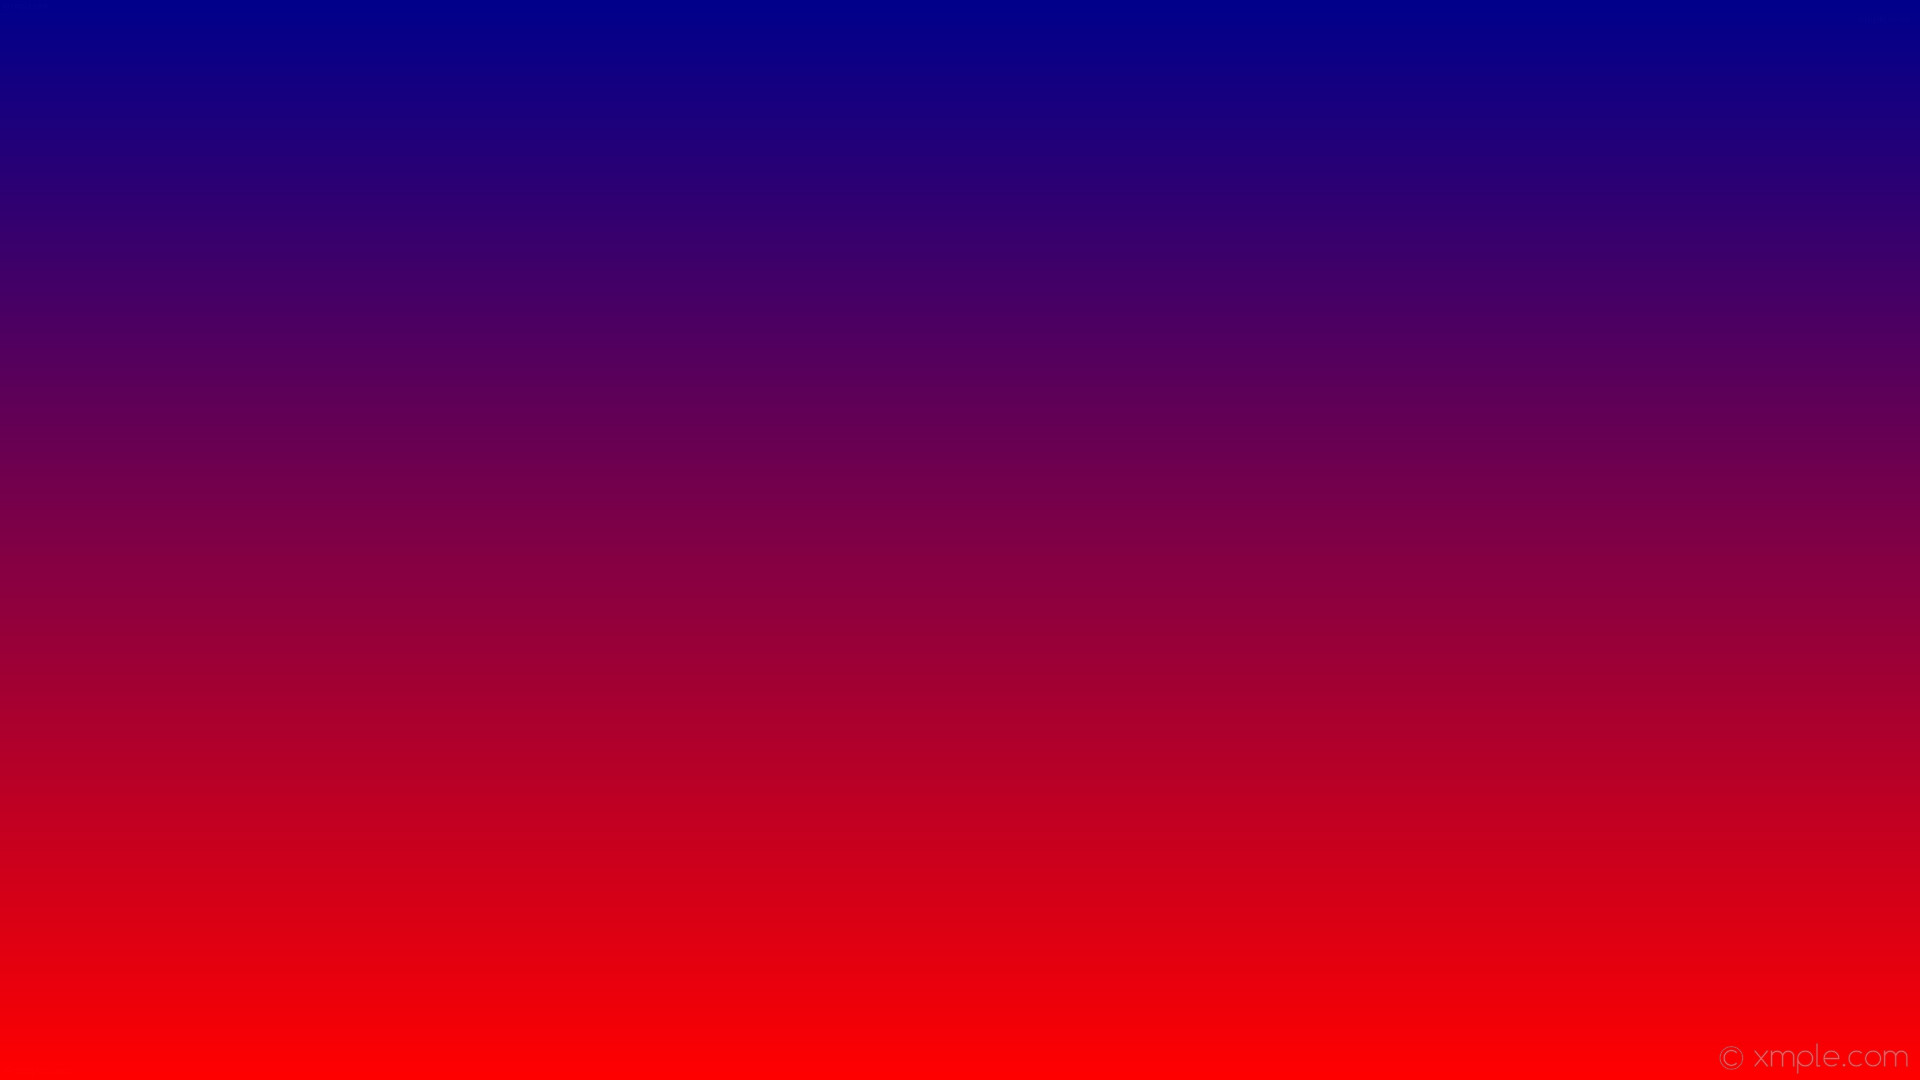 1920x1080 wallpaper blue red gradient linear dark blue #00008b #ff0000 90Â°